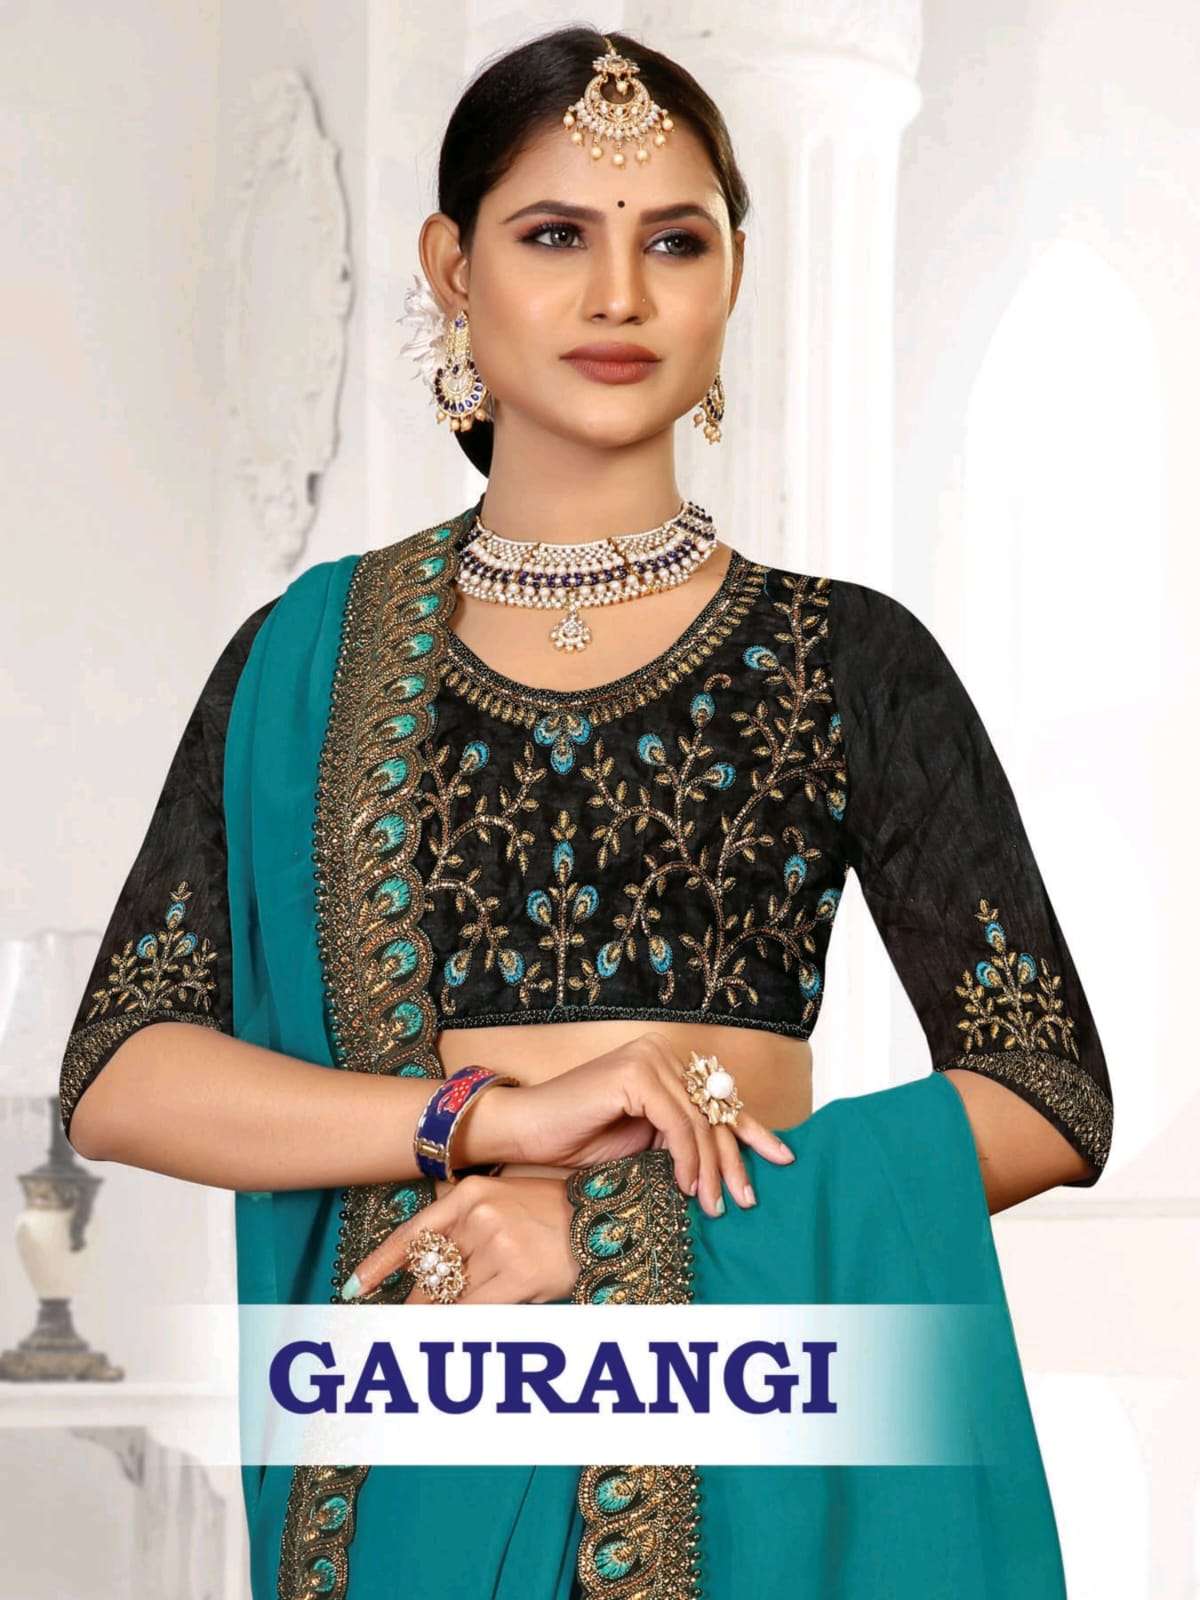 Gaurangi by ranjna saree work border blouse saree collection 